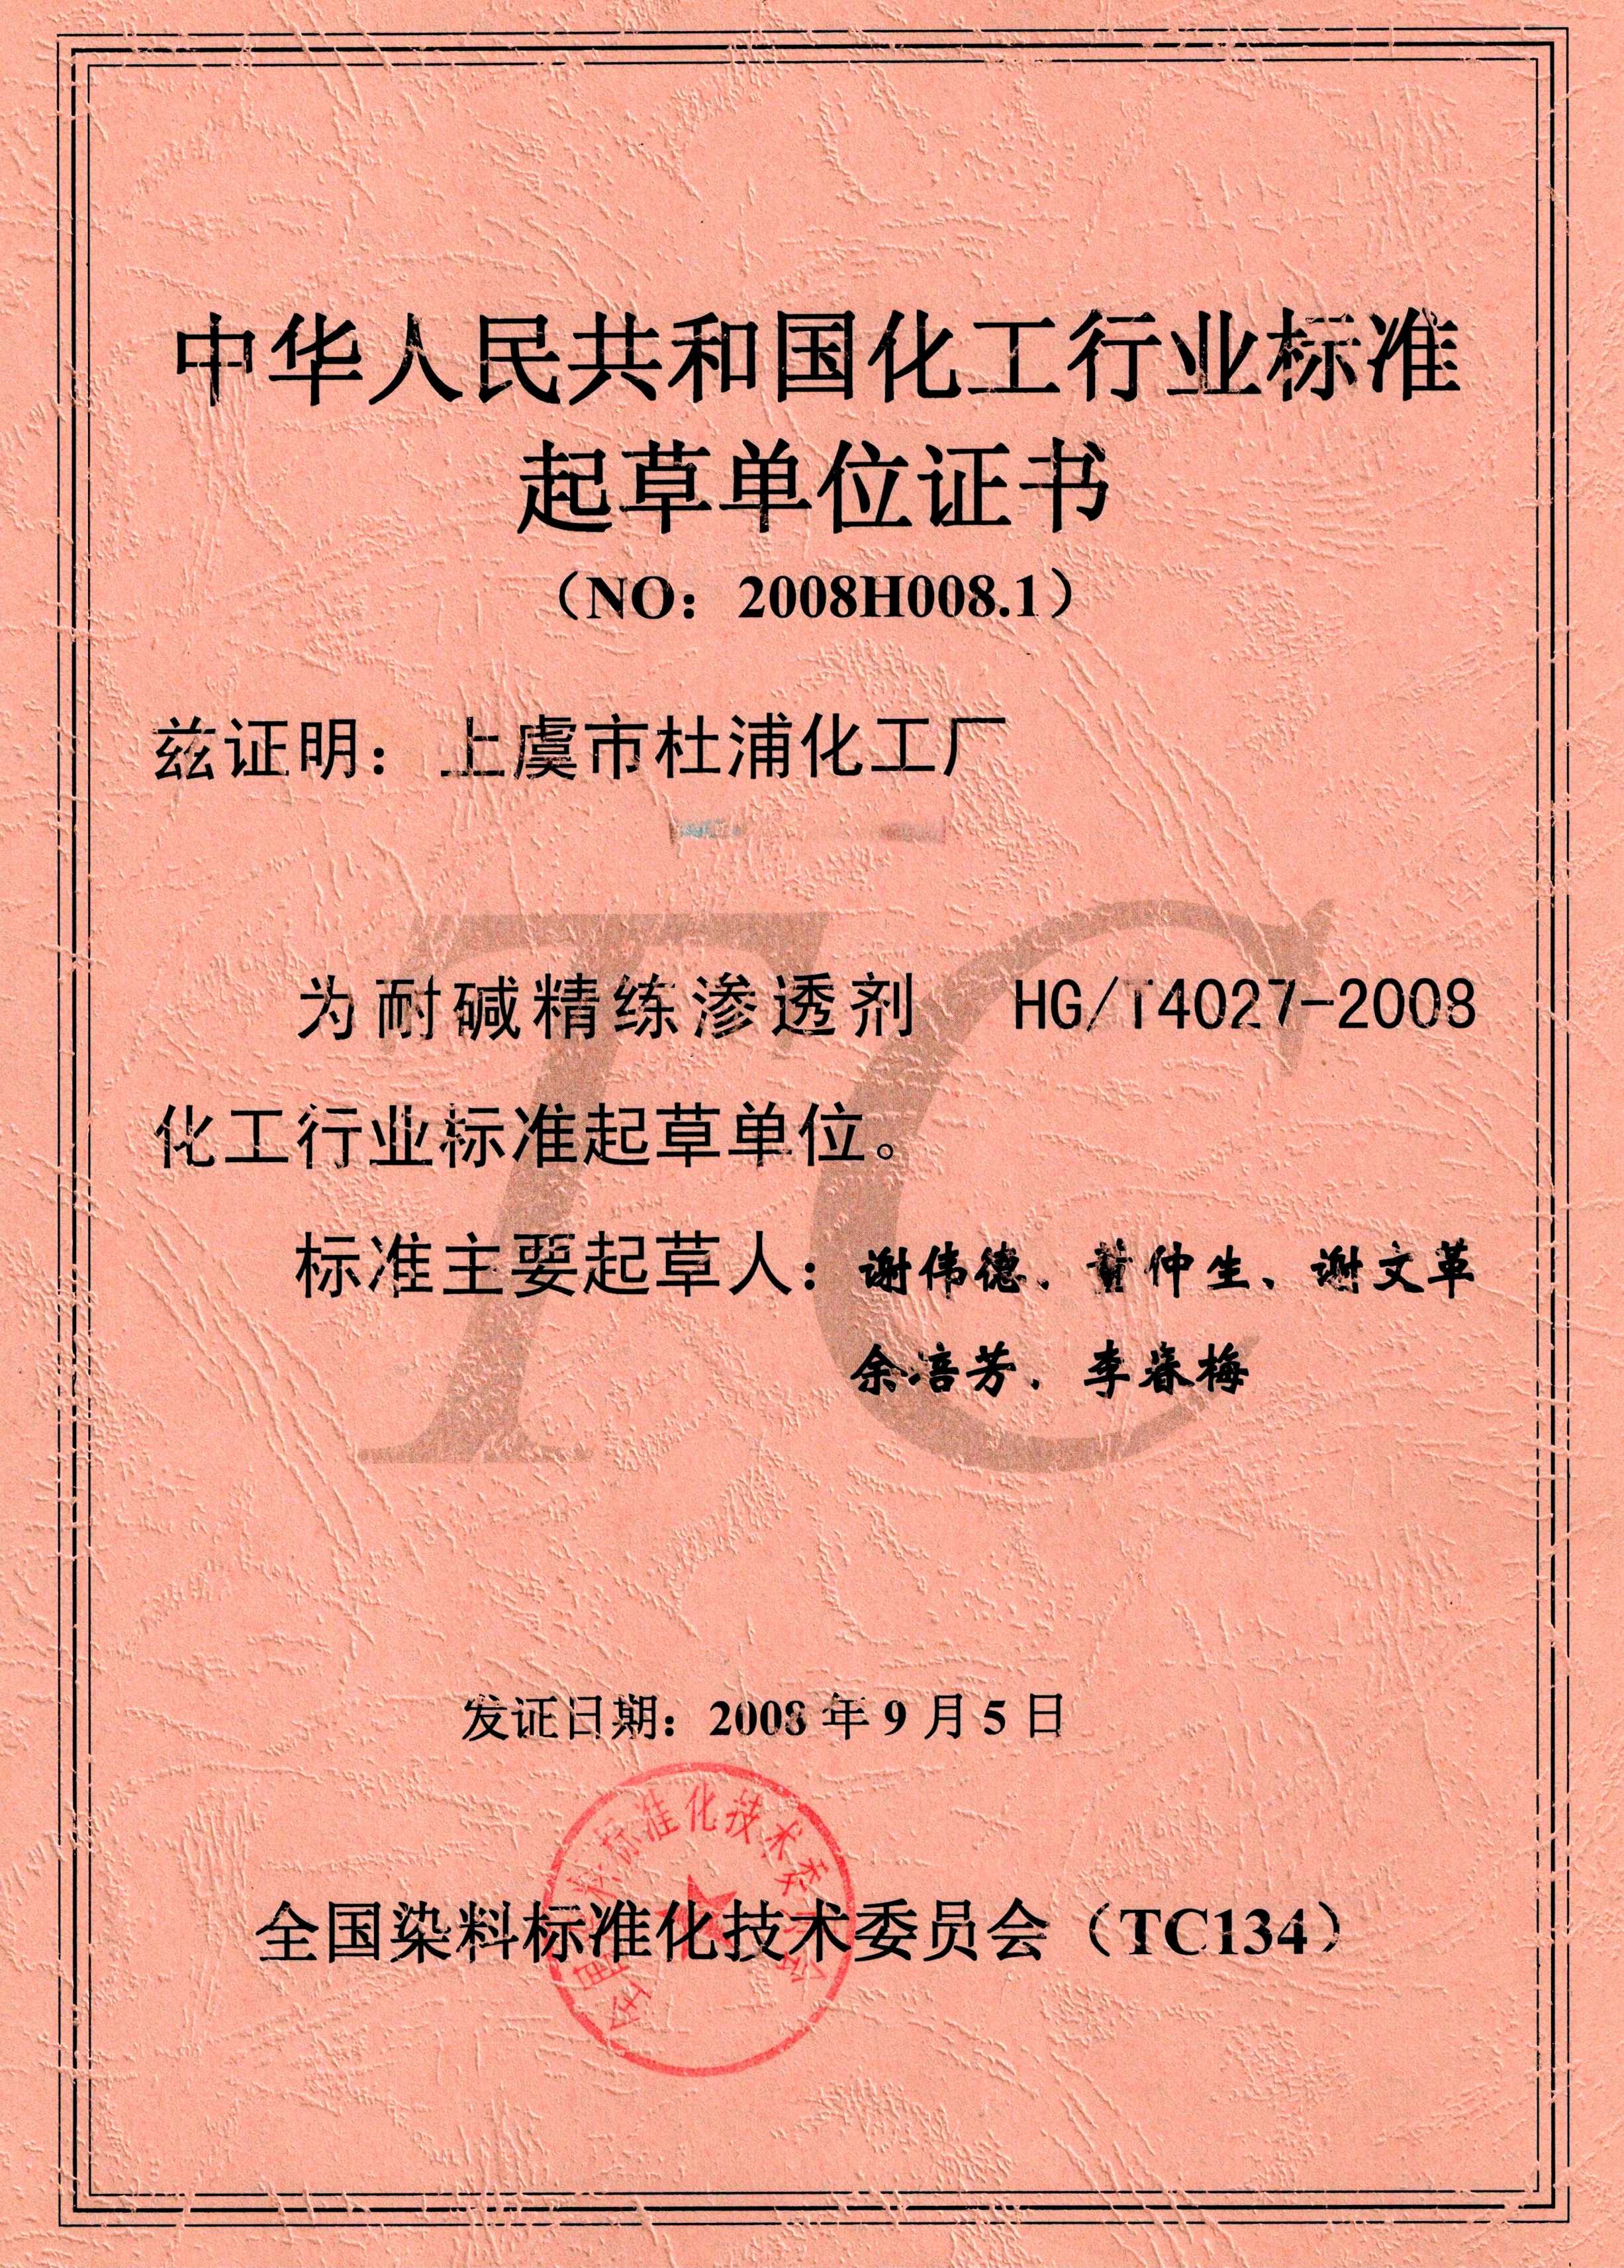 中华人民共和国化工行业标准起草单位证书(NO:2008H008.1)